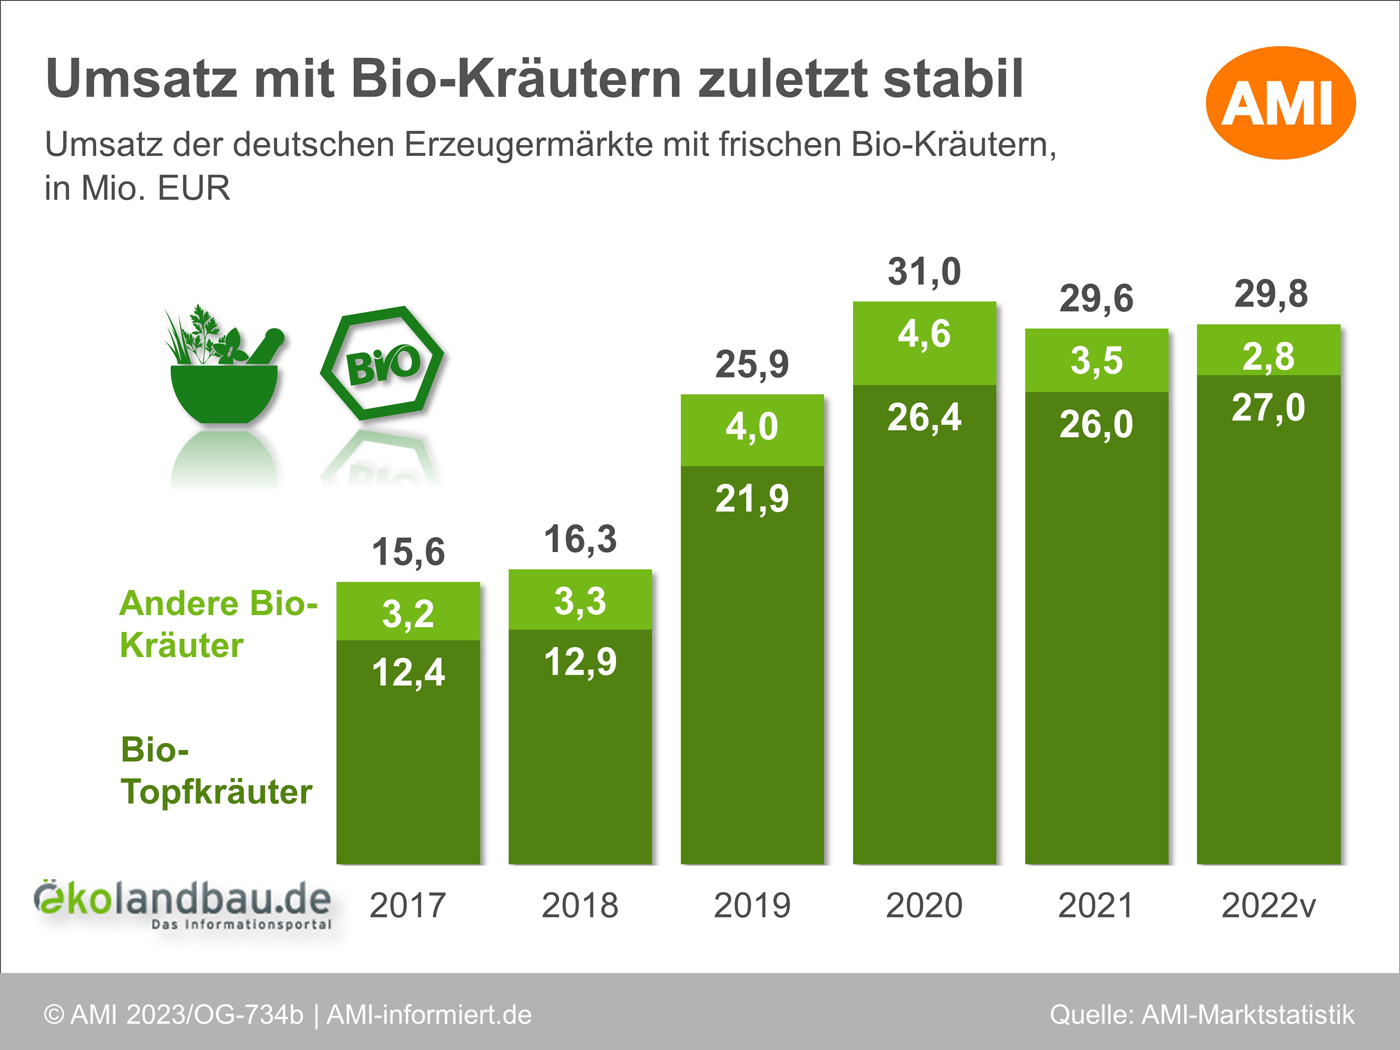 Umsatz der deutschen Erzeugermärkte mit frischen Bio-Kräuter von 2017 bis 2022. Klick führt zu Großansicht in neuem Fenster.